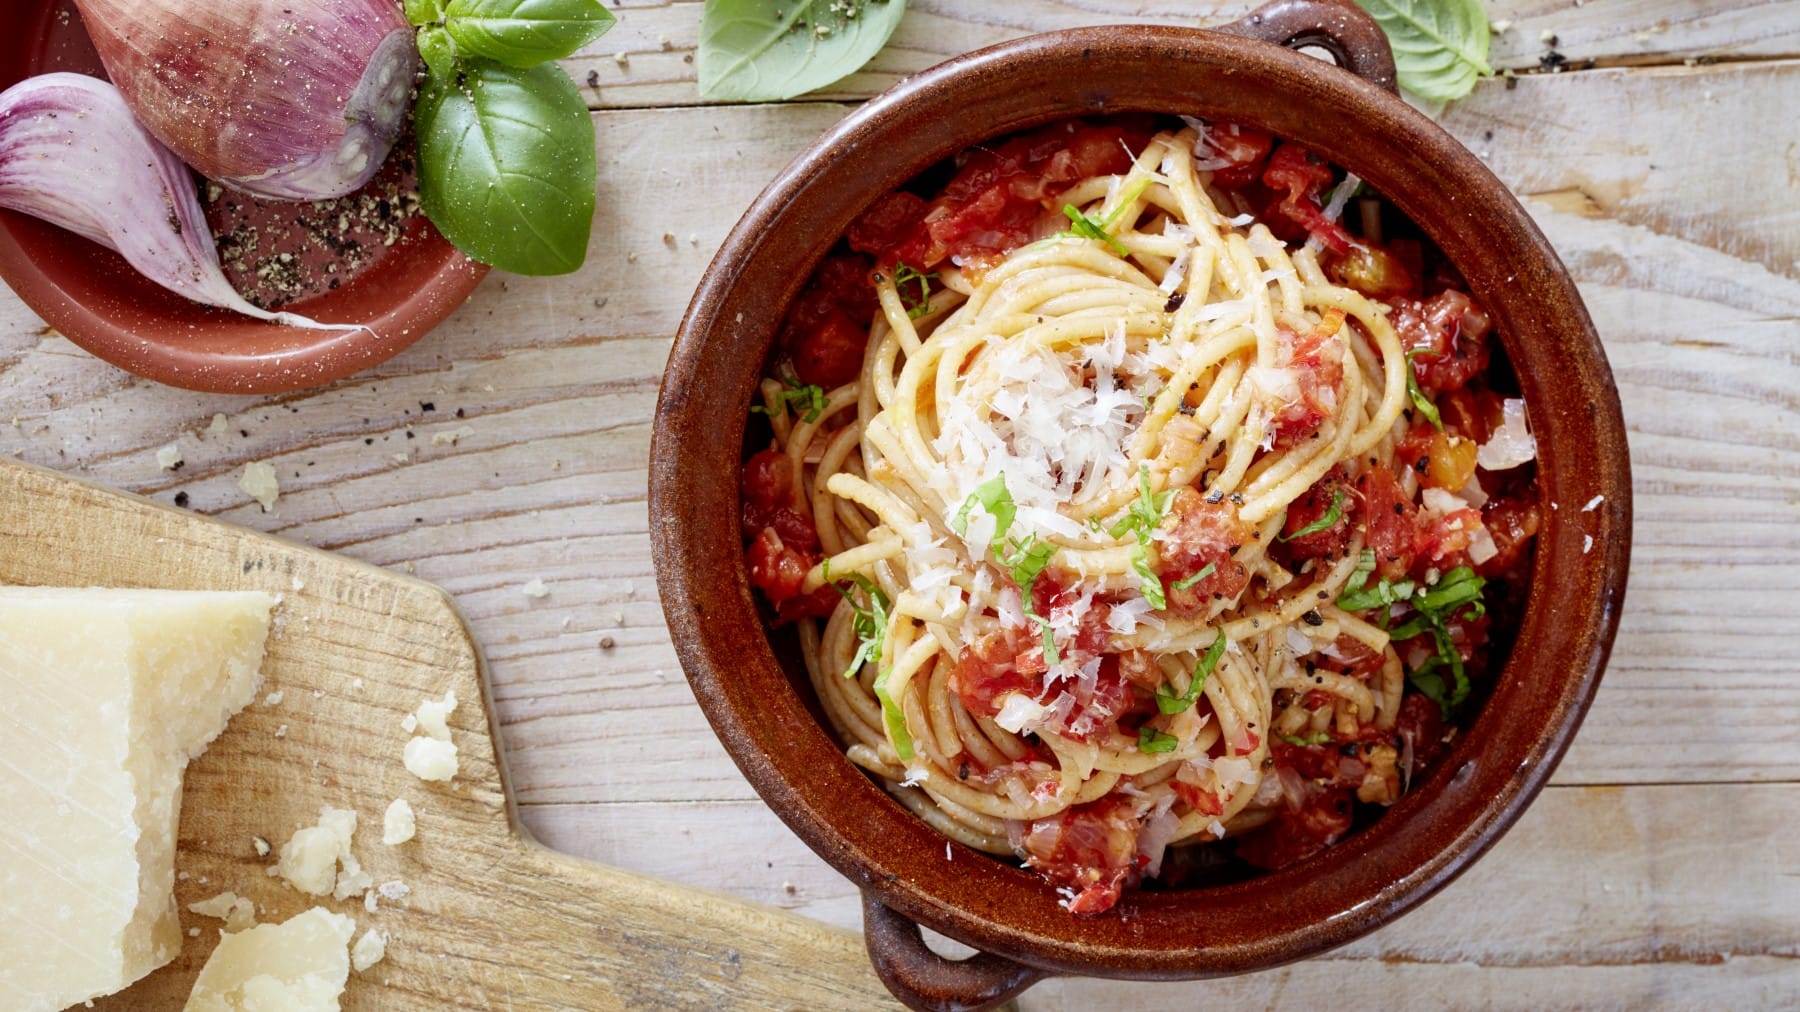 Spaghetti mit Chili in einem braunen Topf auf hölzernem Hintergrund. Links davon ein Brett mit Parmesan und links oben Schalotten, Knoblauch, Basilikum und Pfeffer.